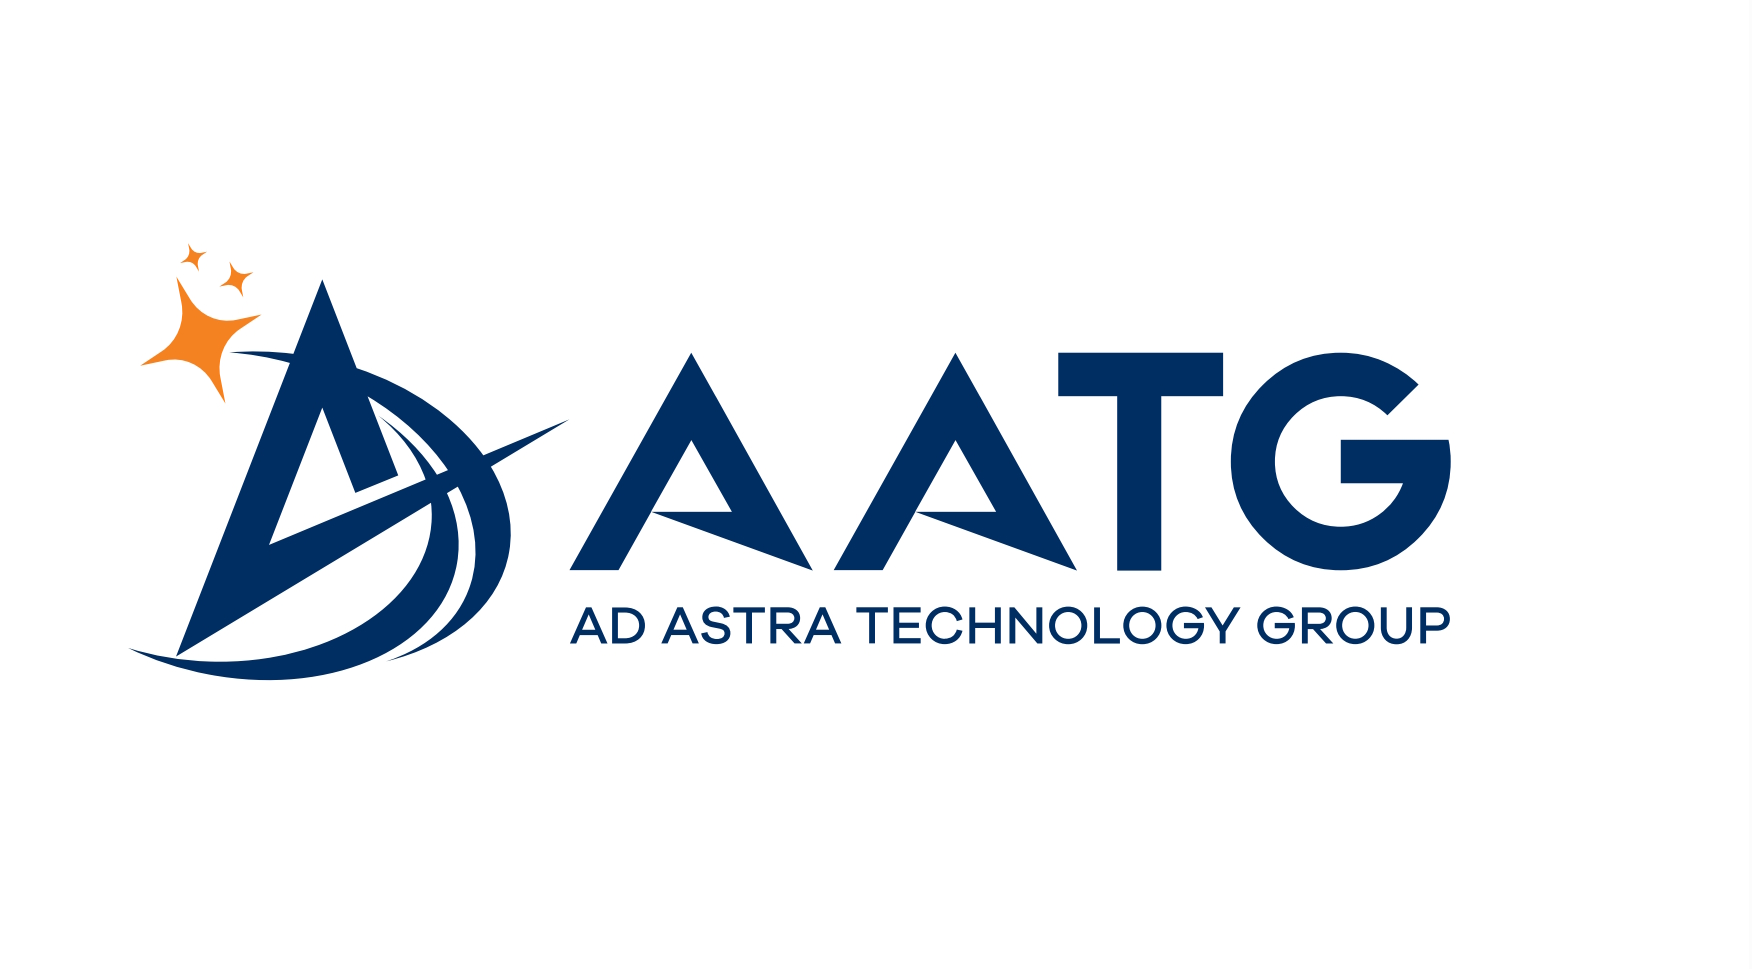 Uğur Coşkun`un Kurucusu Olduğu Ad Astra Technology Group (AATG) Şirketinin Lansman Toplantısı Yapıldı